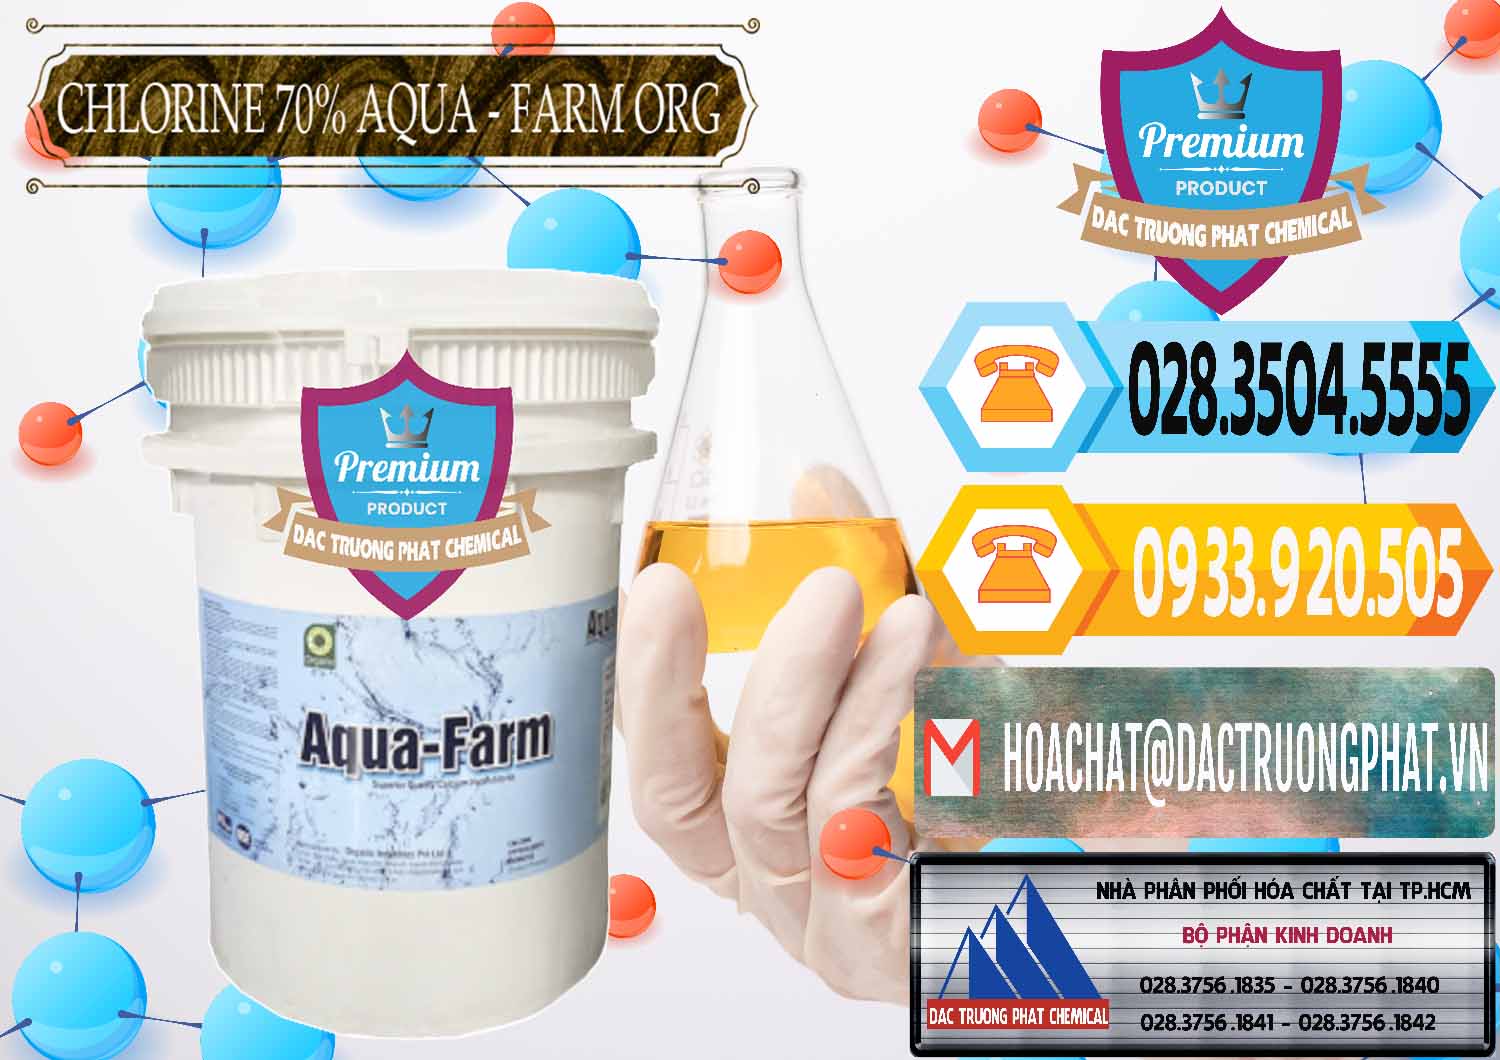 Chuyên kinh doanh & bán Chlorine – Clorin 70% Aqua - Farm ORG Organic Ấn Độ India - 0246 - Nơi chuyên cung cấp - bán hóa chất tại TP.HCM - hoachattayrua.net